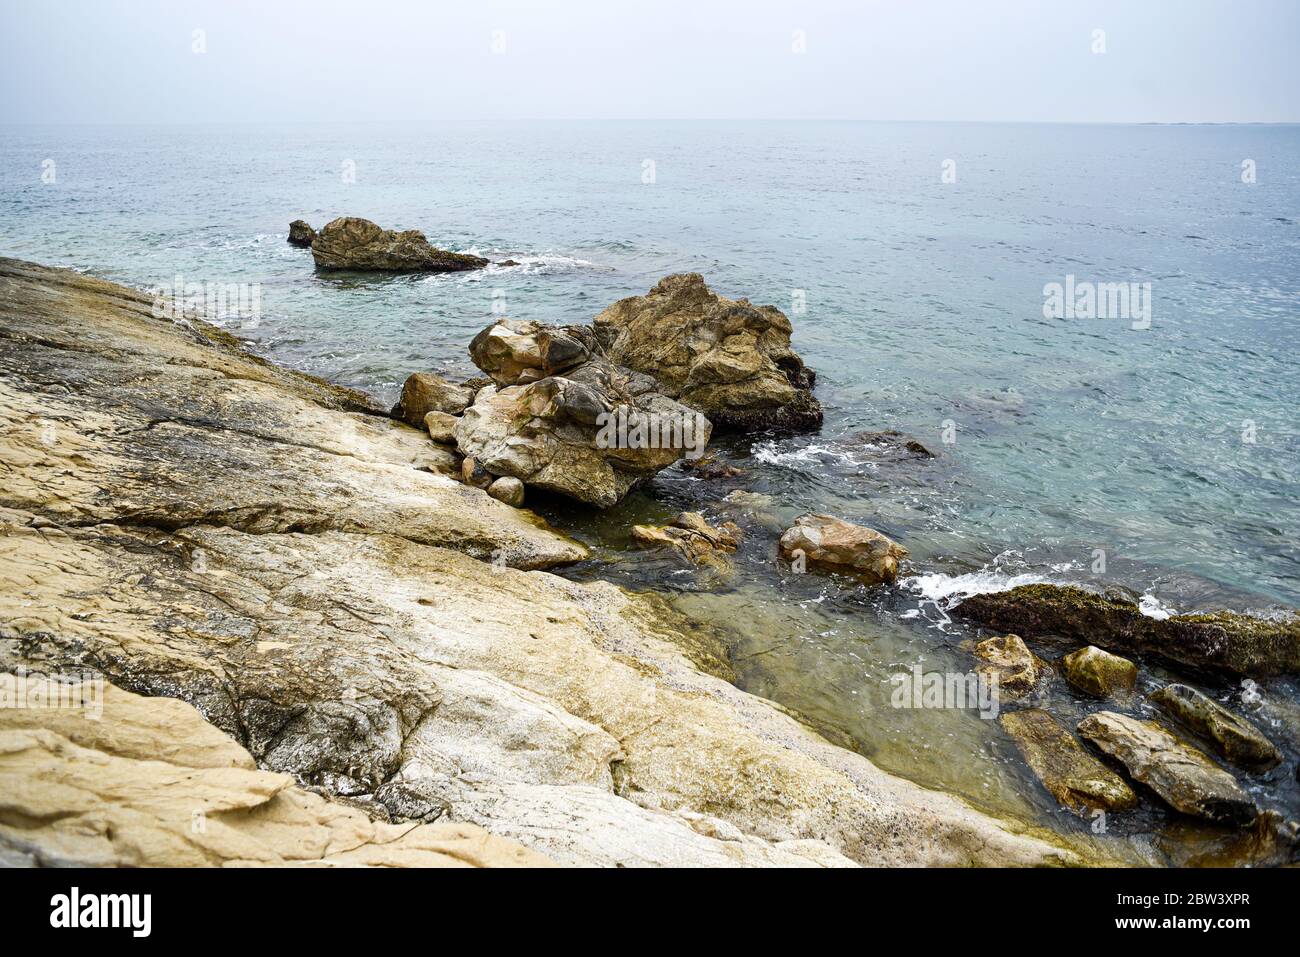 La costa rocosa de España en el Mediterráneo. Foto de stock